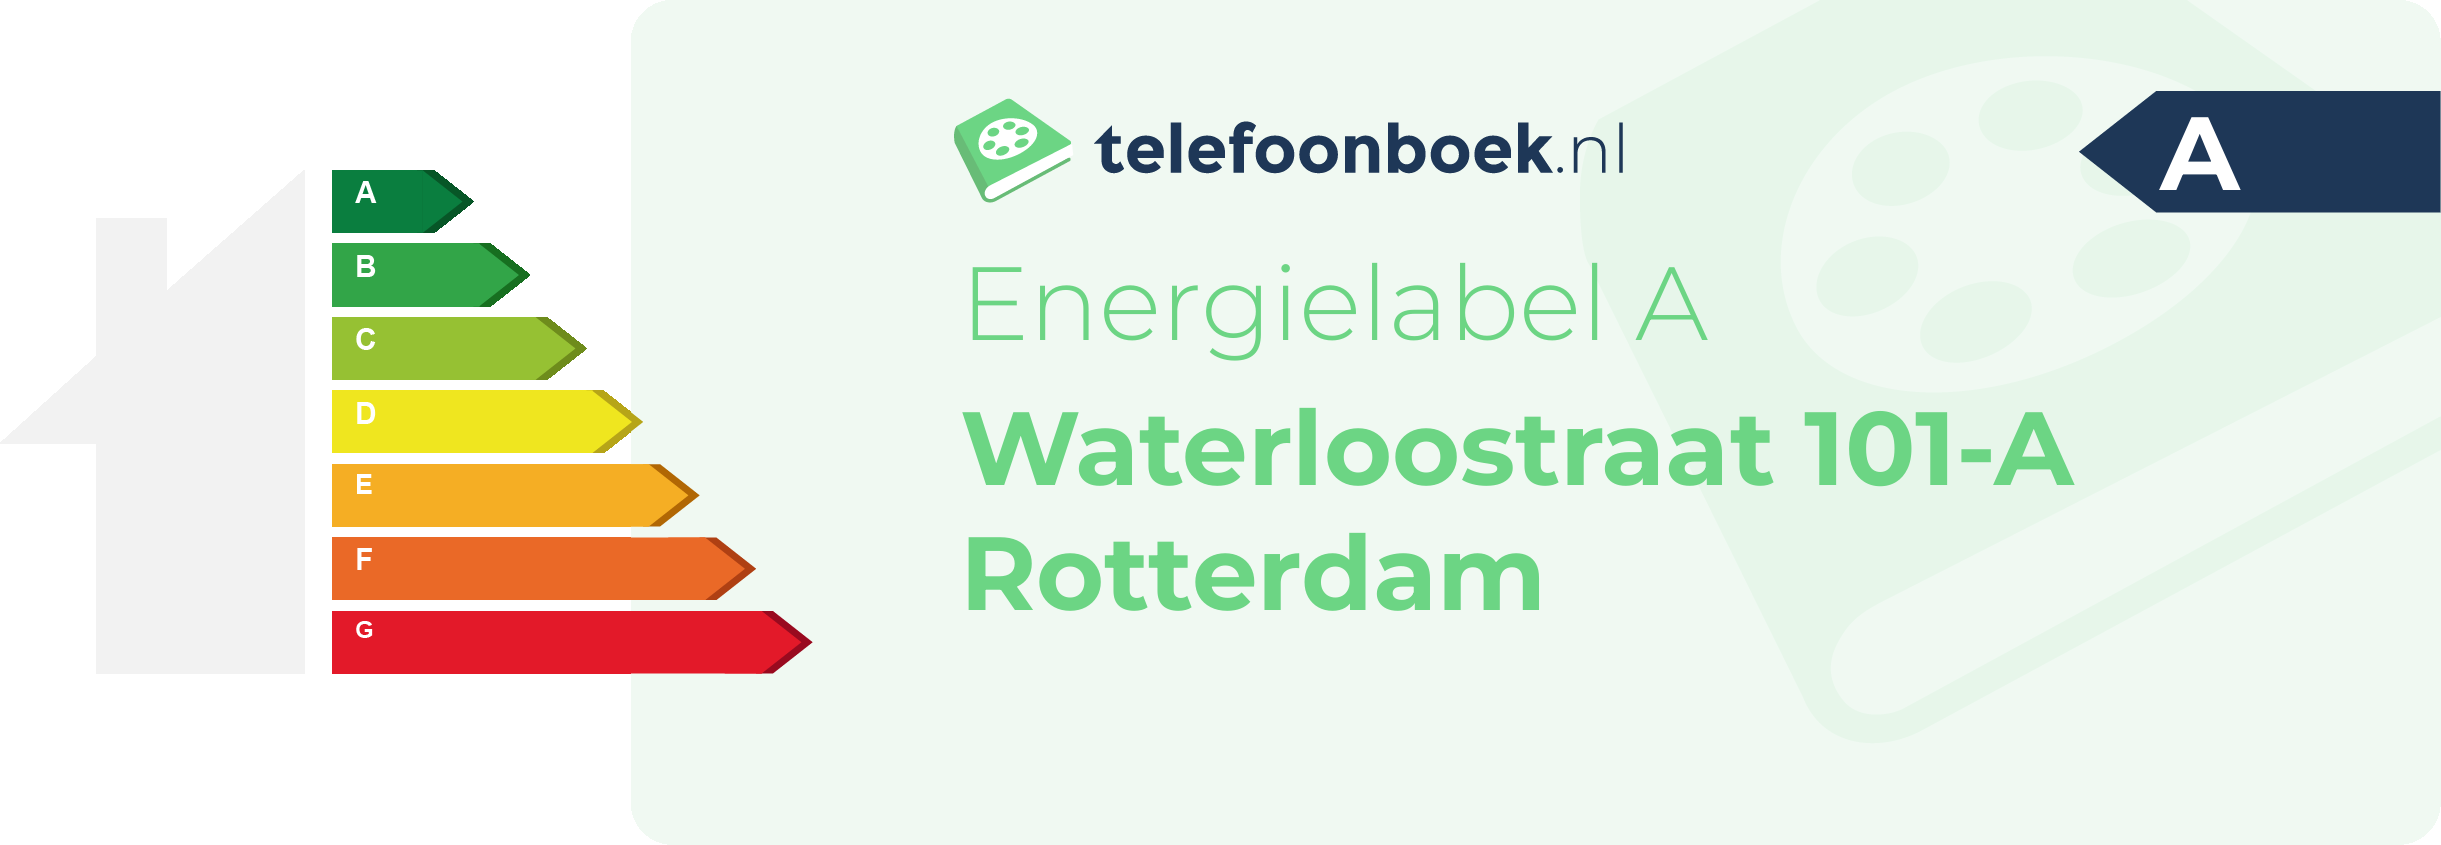 Energielabel Waterloostraat 101-A Rotterdam